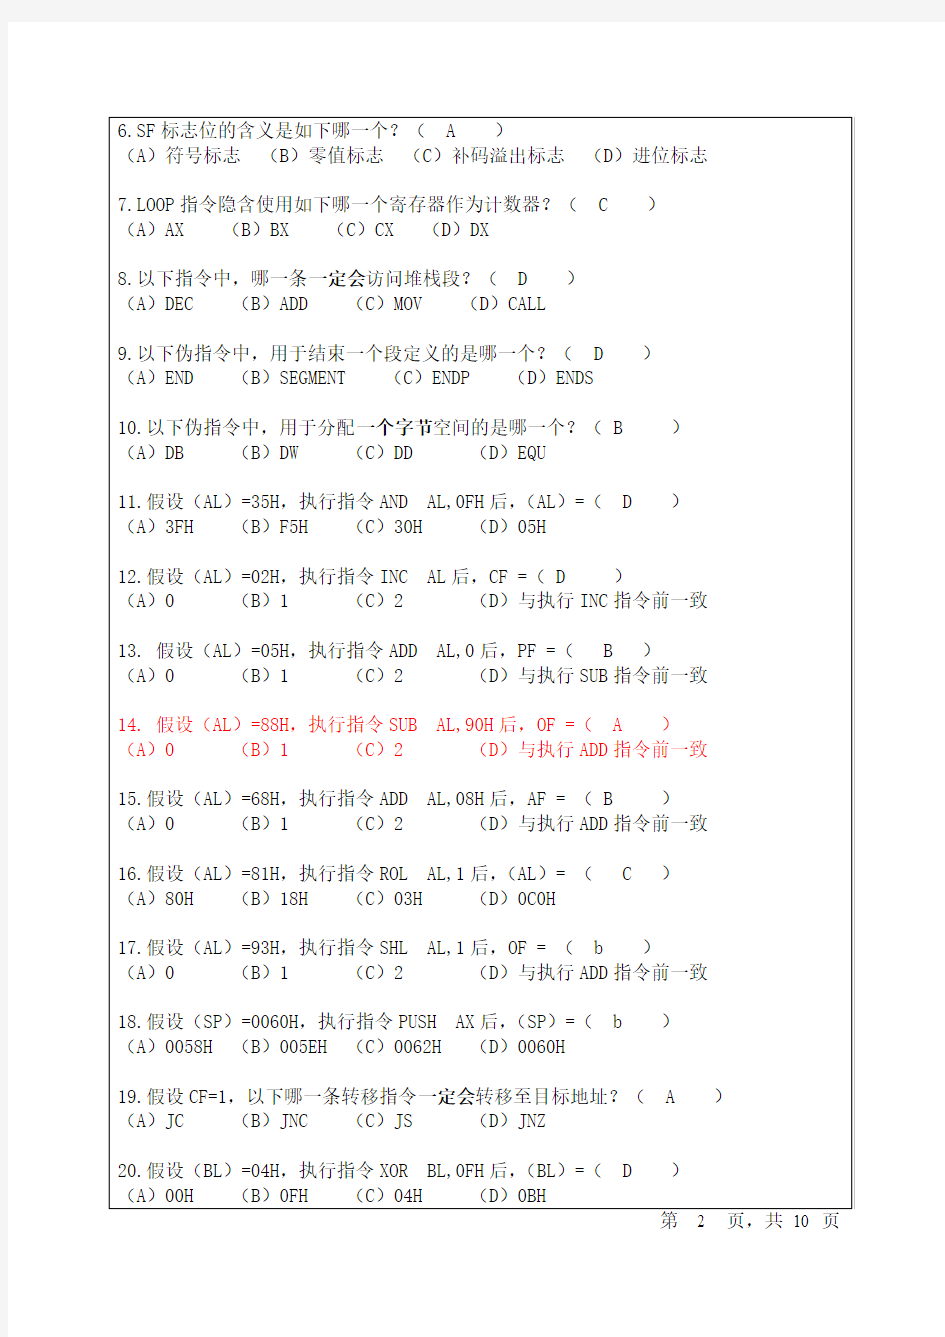 四川大学汇编语言程序设计2015-2016期末试题(附答案)